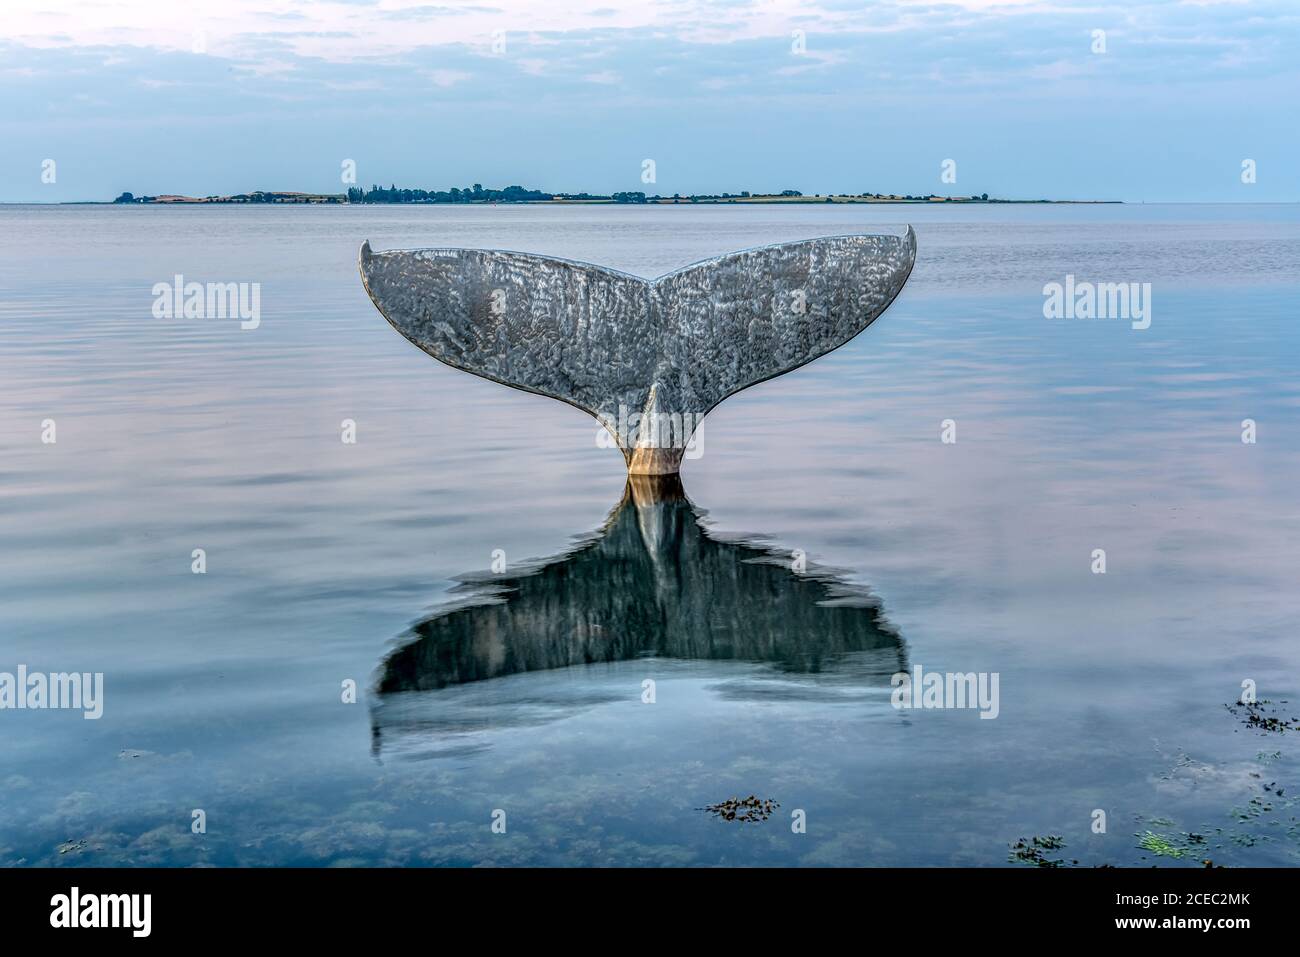 Der Walschwanz, eine Skulptur in Faaborg, die sich im Meerwasser spiegelt und Avernako im Hintergrund, Faaborg, Dänemark, 16. August 2020 Stockfoto